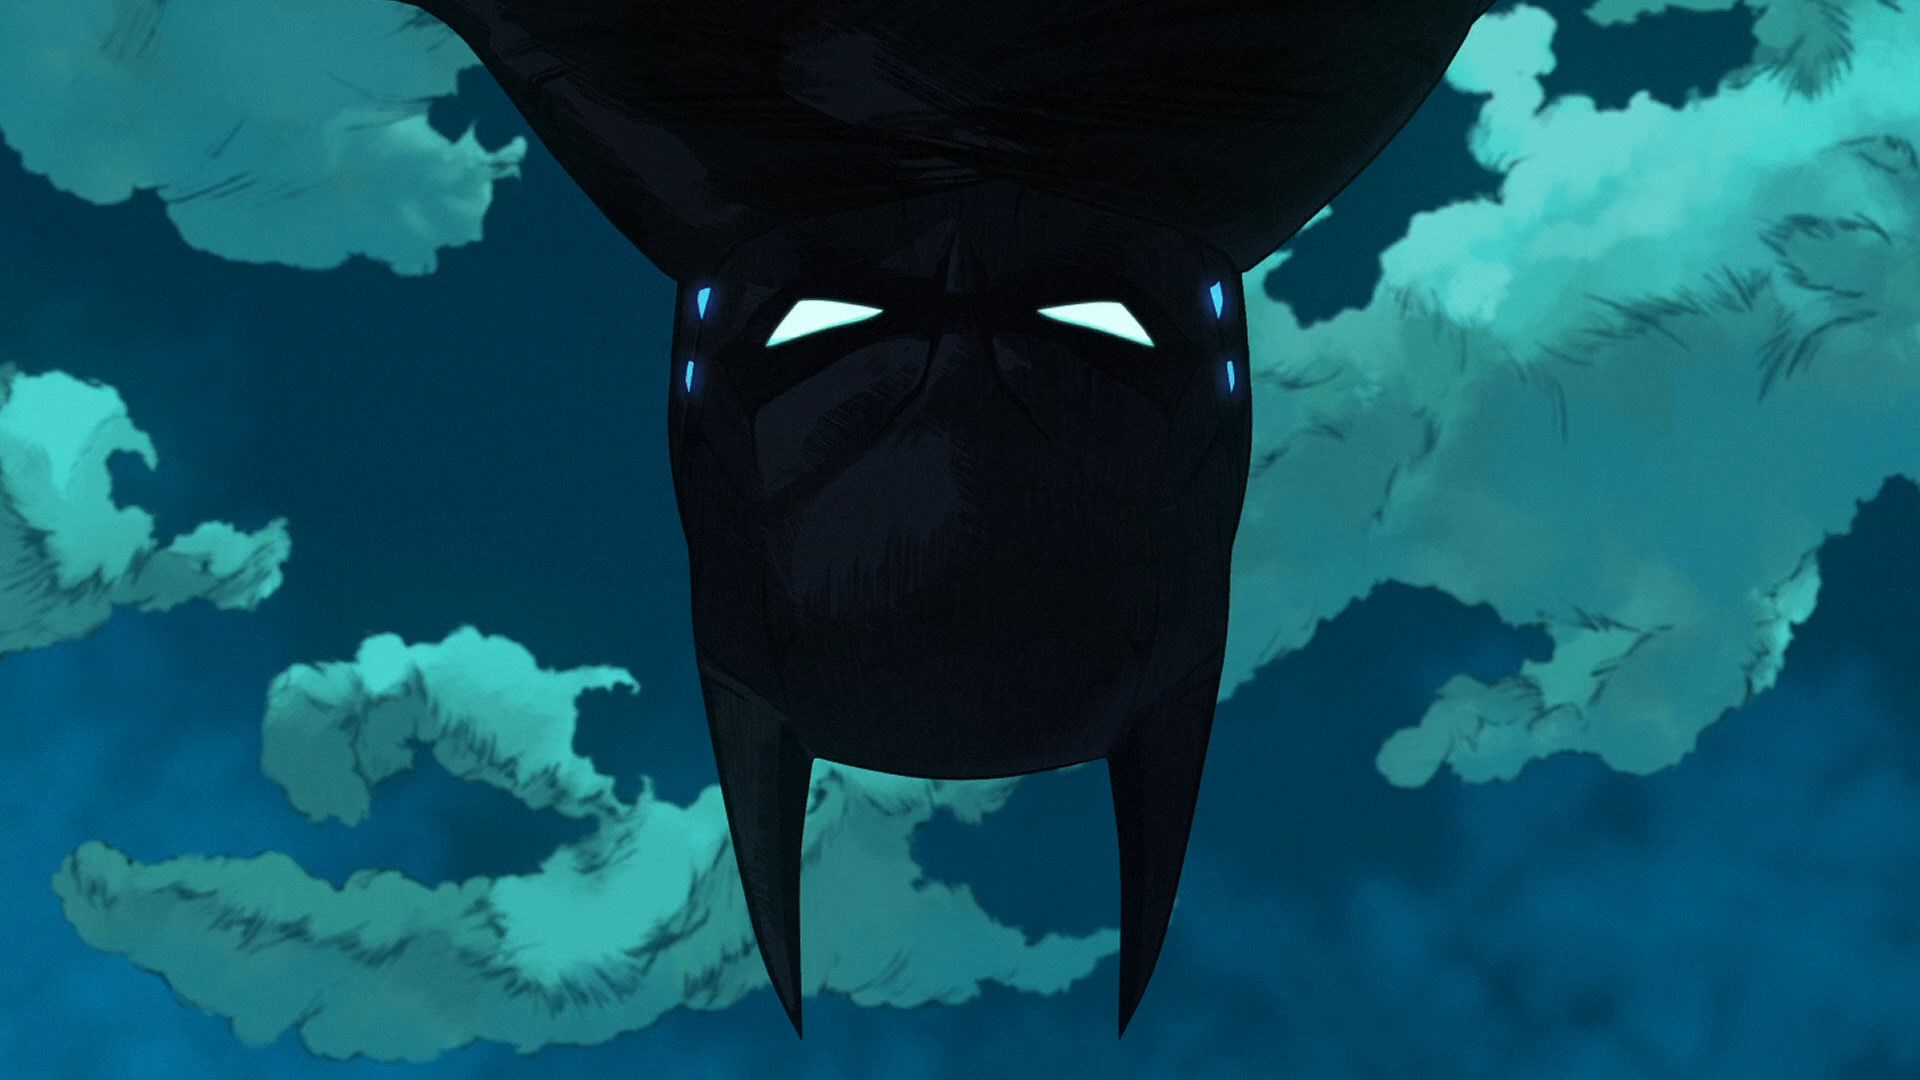 Batman Ninja Batman Cartoon Clouds Upside Down 1920x1080